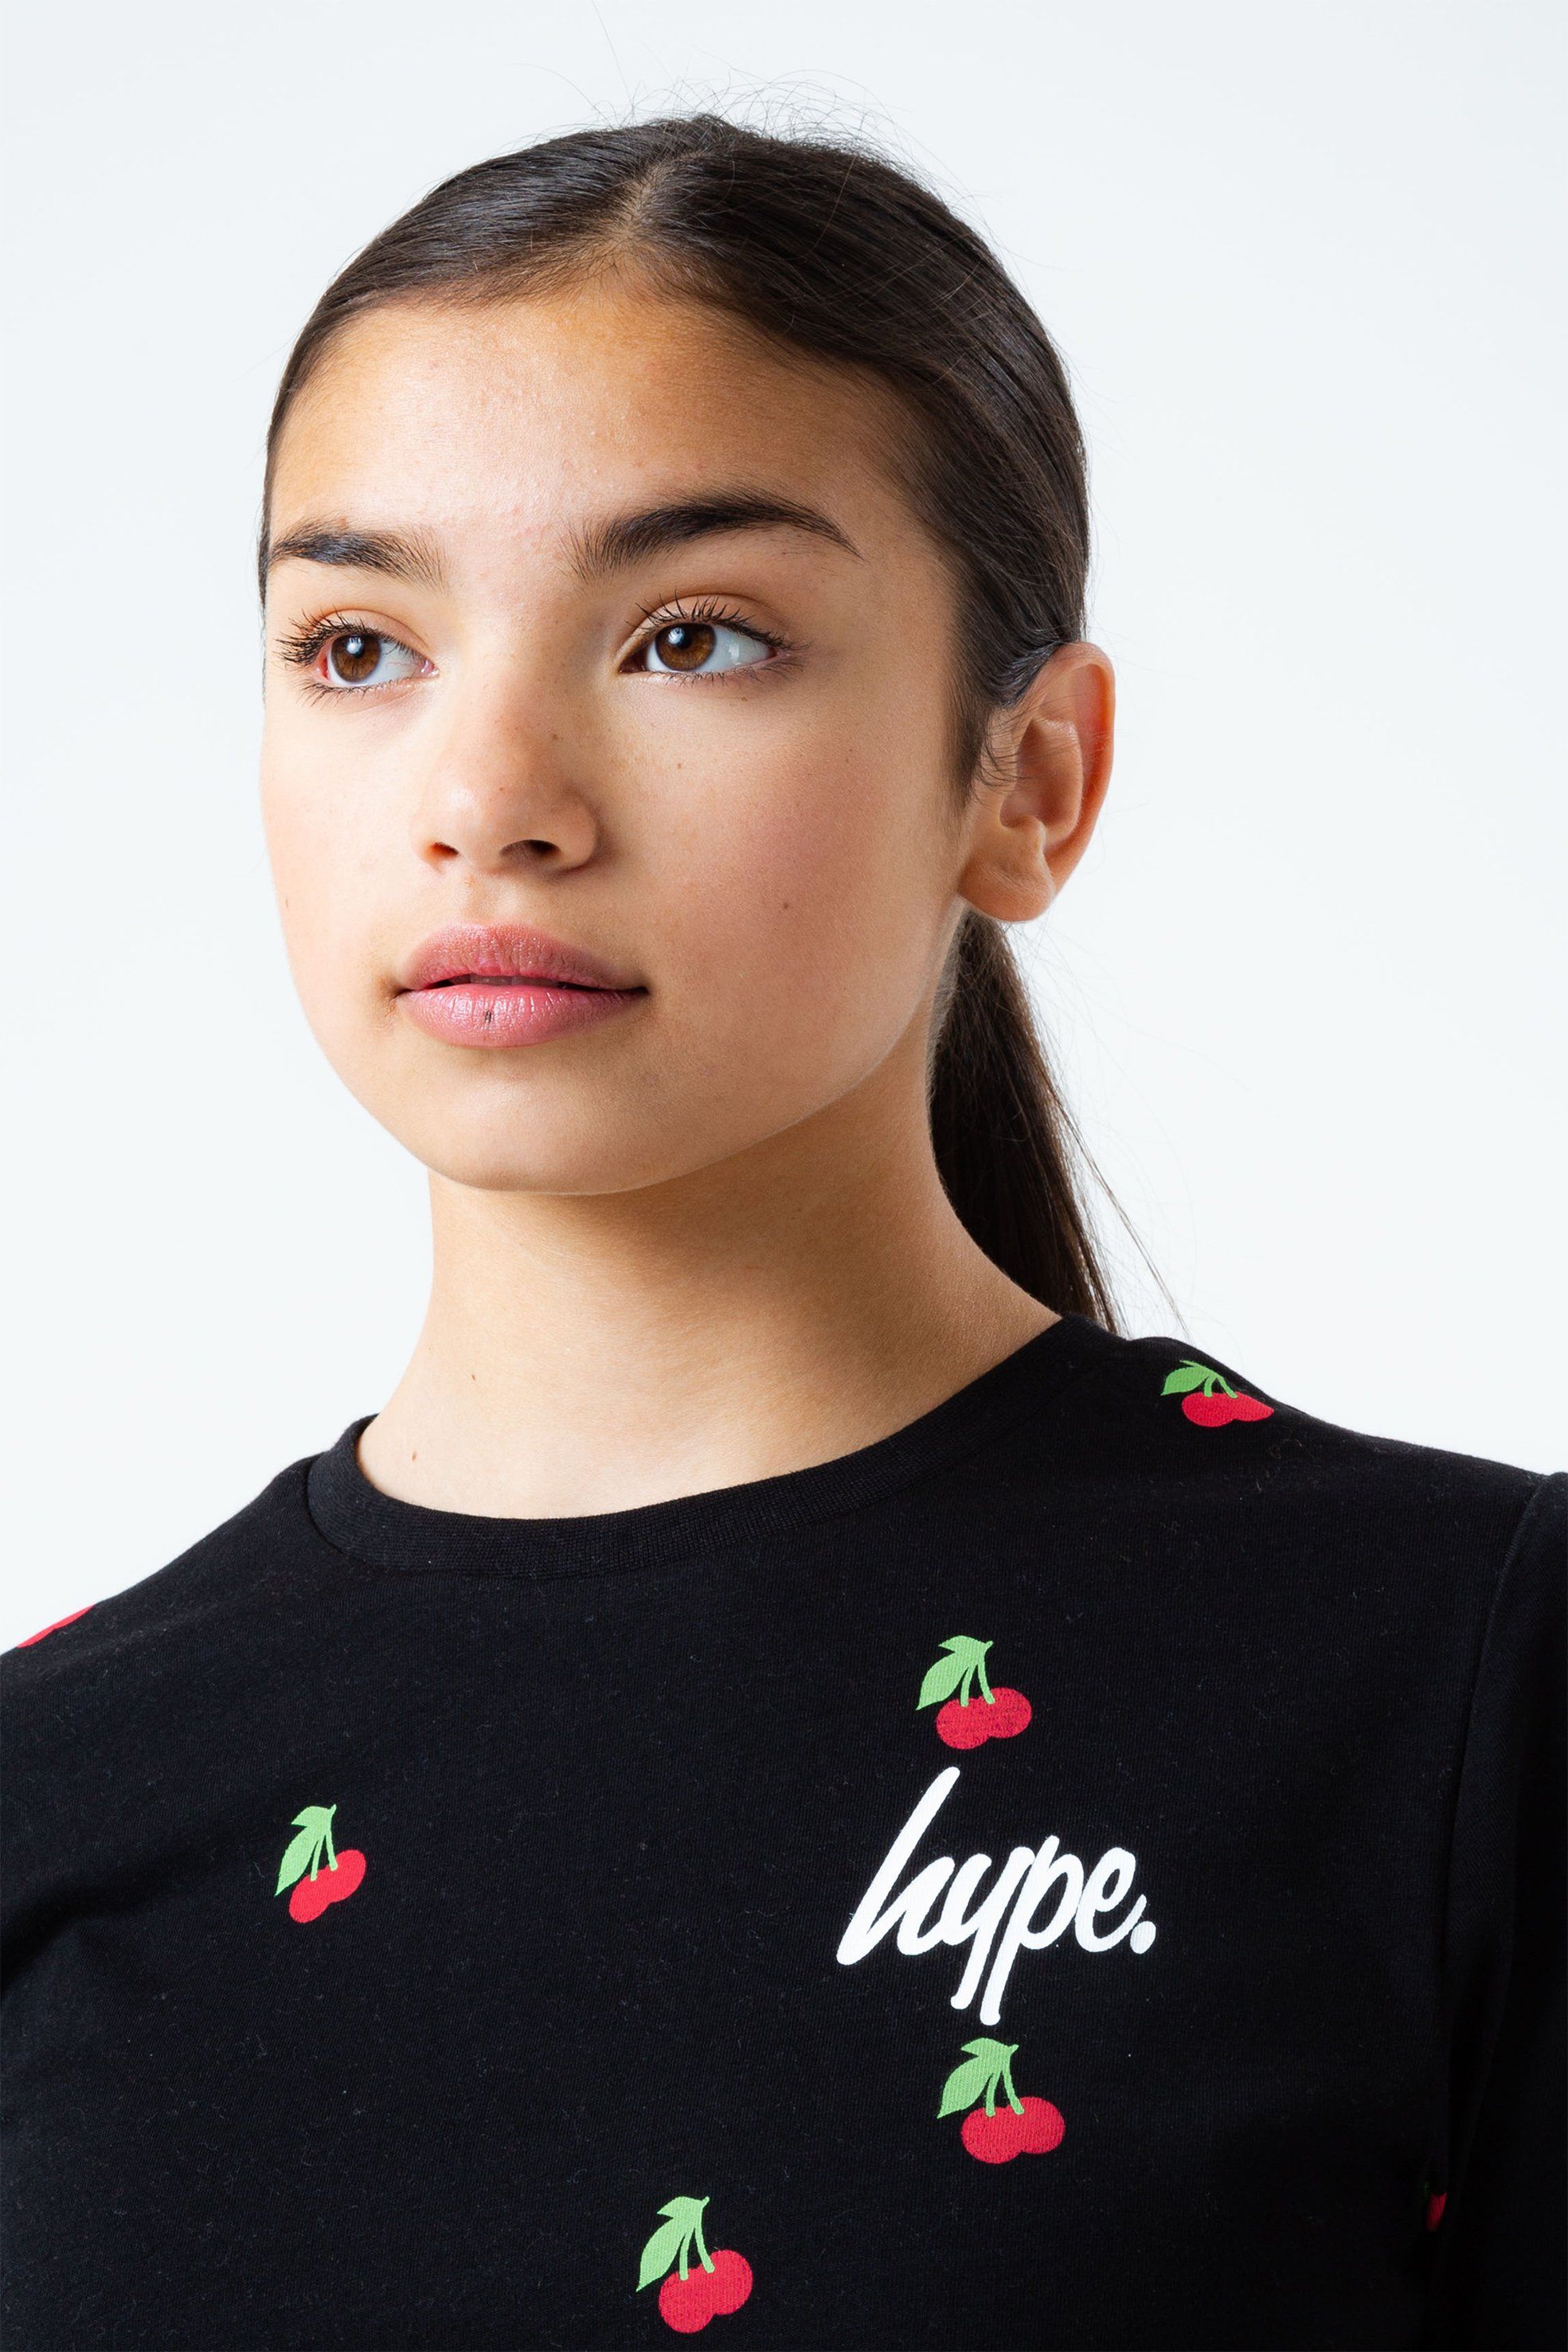 Hype Cherry Kids Crop T-Shirt